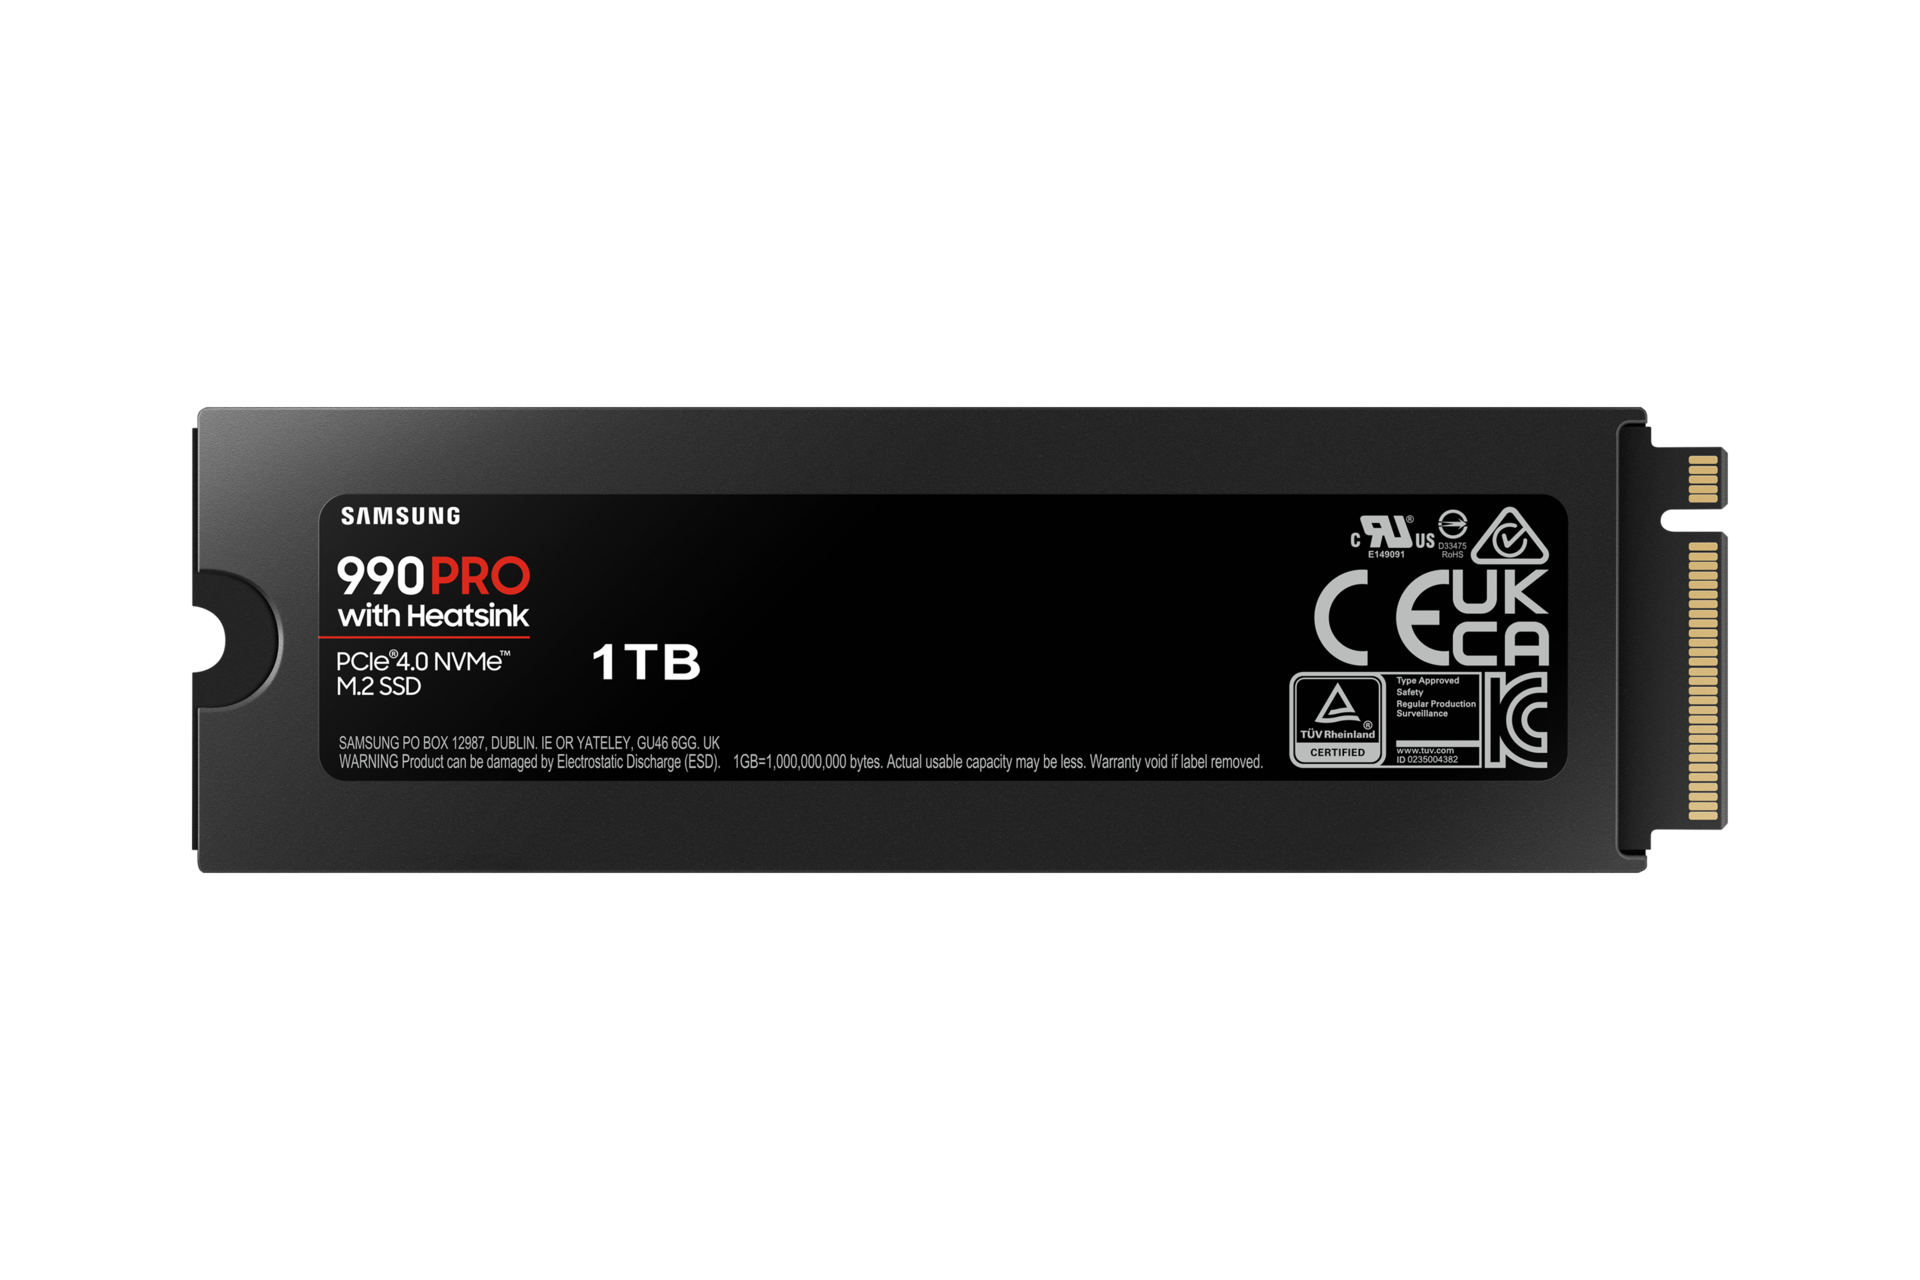 990 PRO NVMe M.2 1TB SSD Card